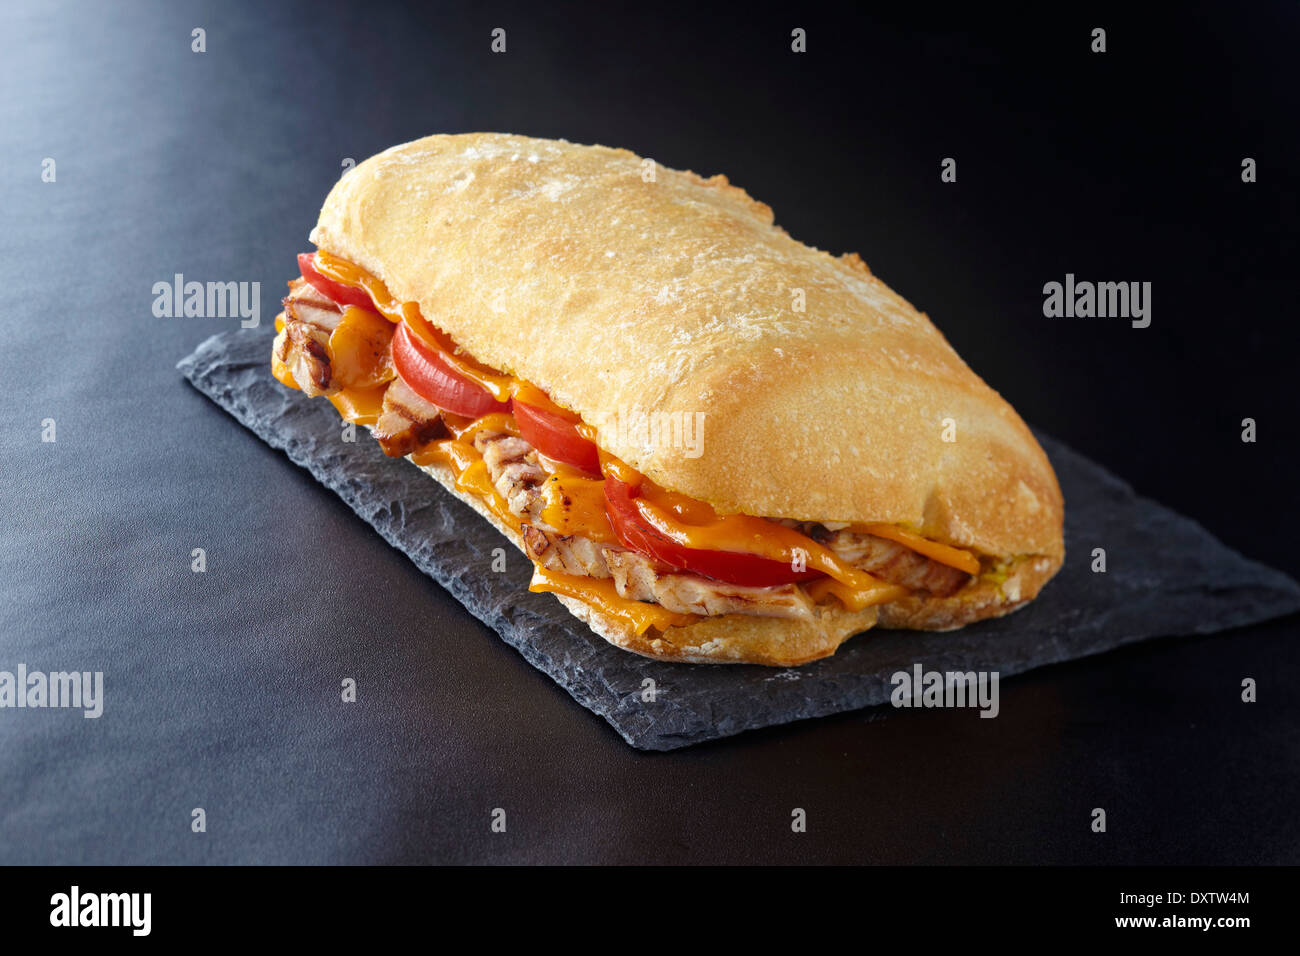 Chicken,cheddar and tomato bread sandwich Stock Photo